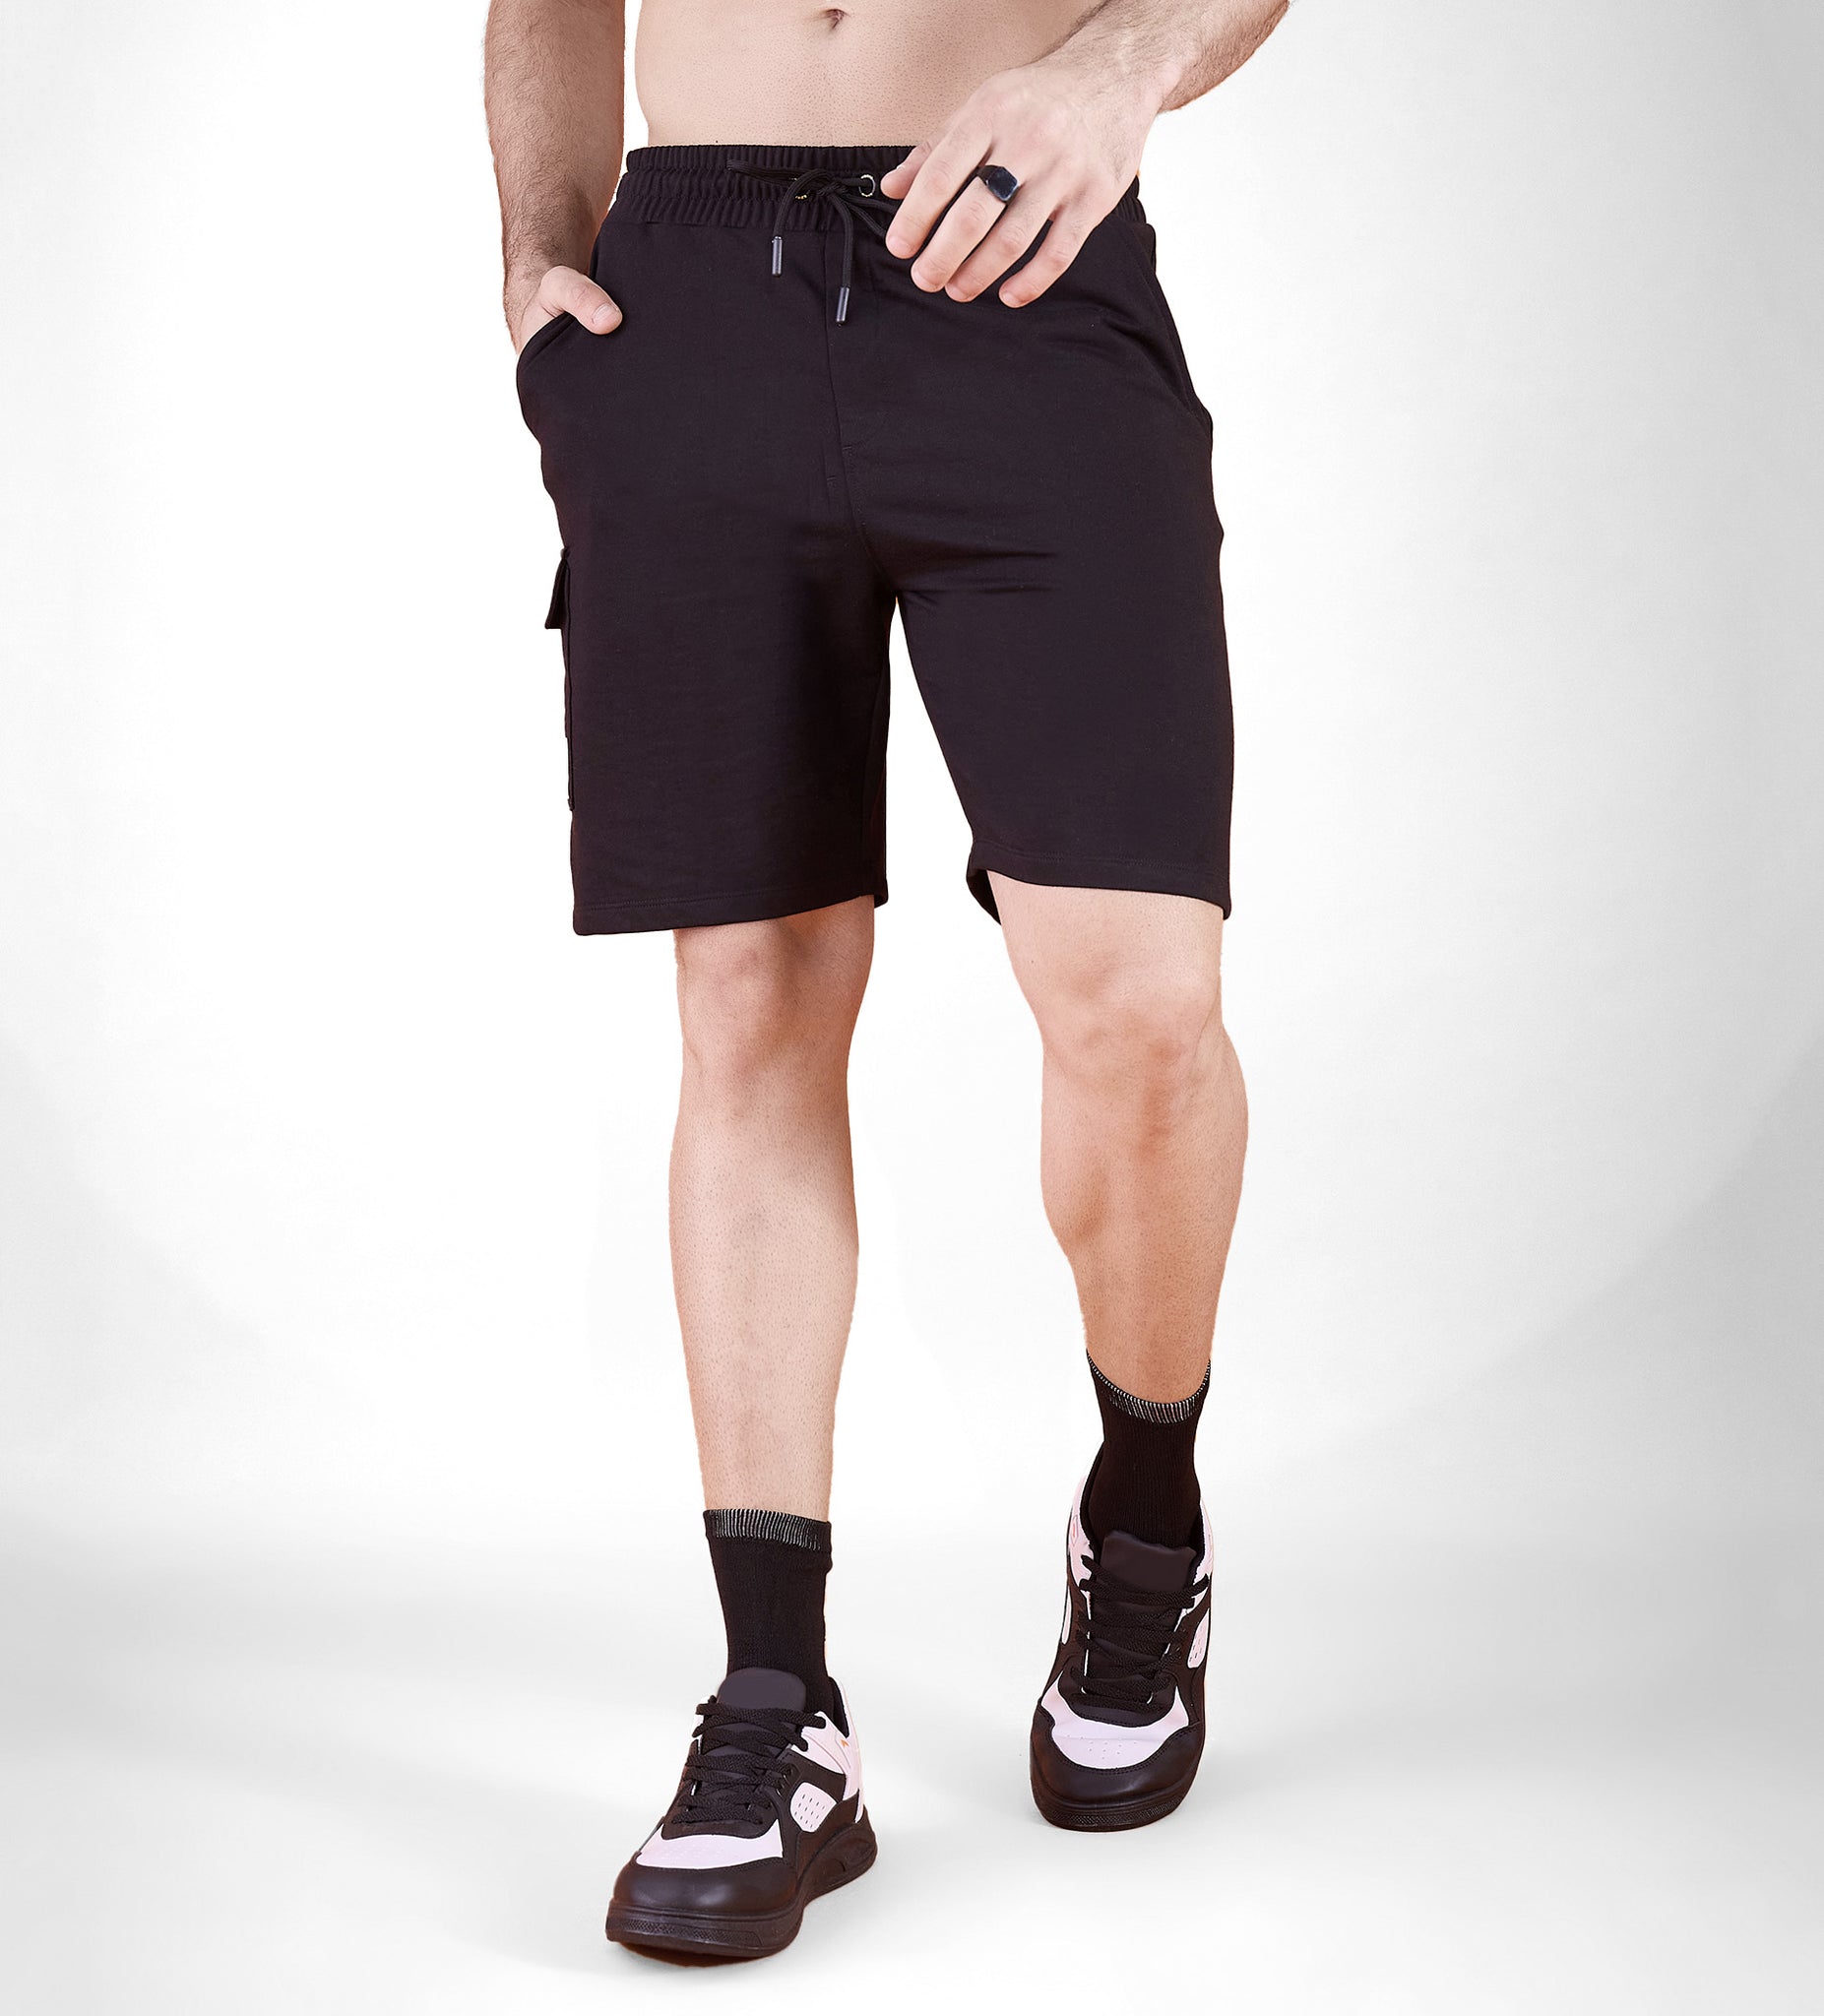 Black Bold Emblem Shorts For Men